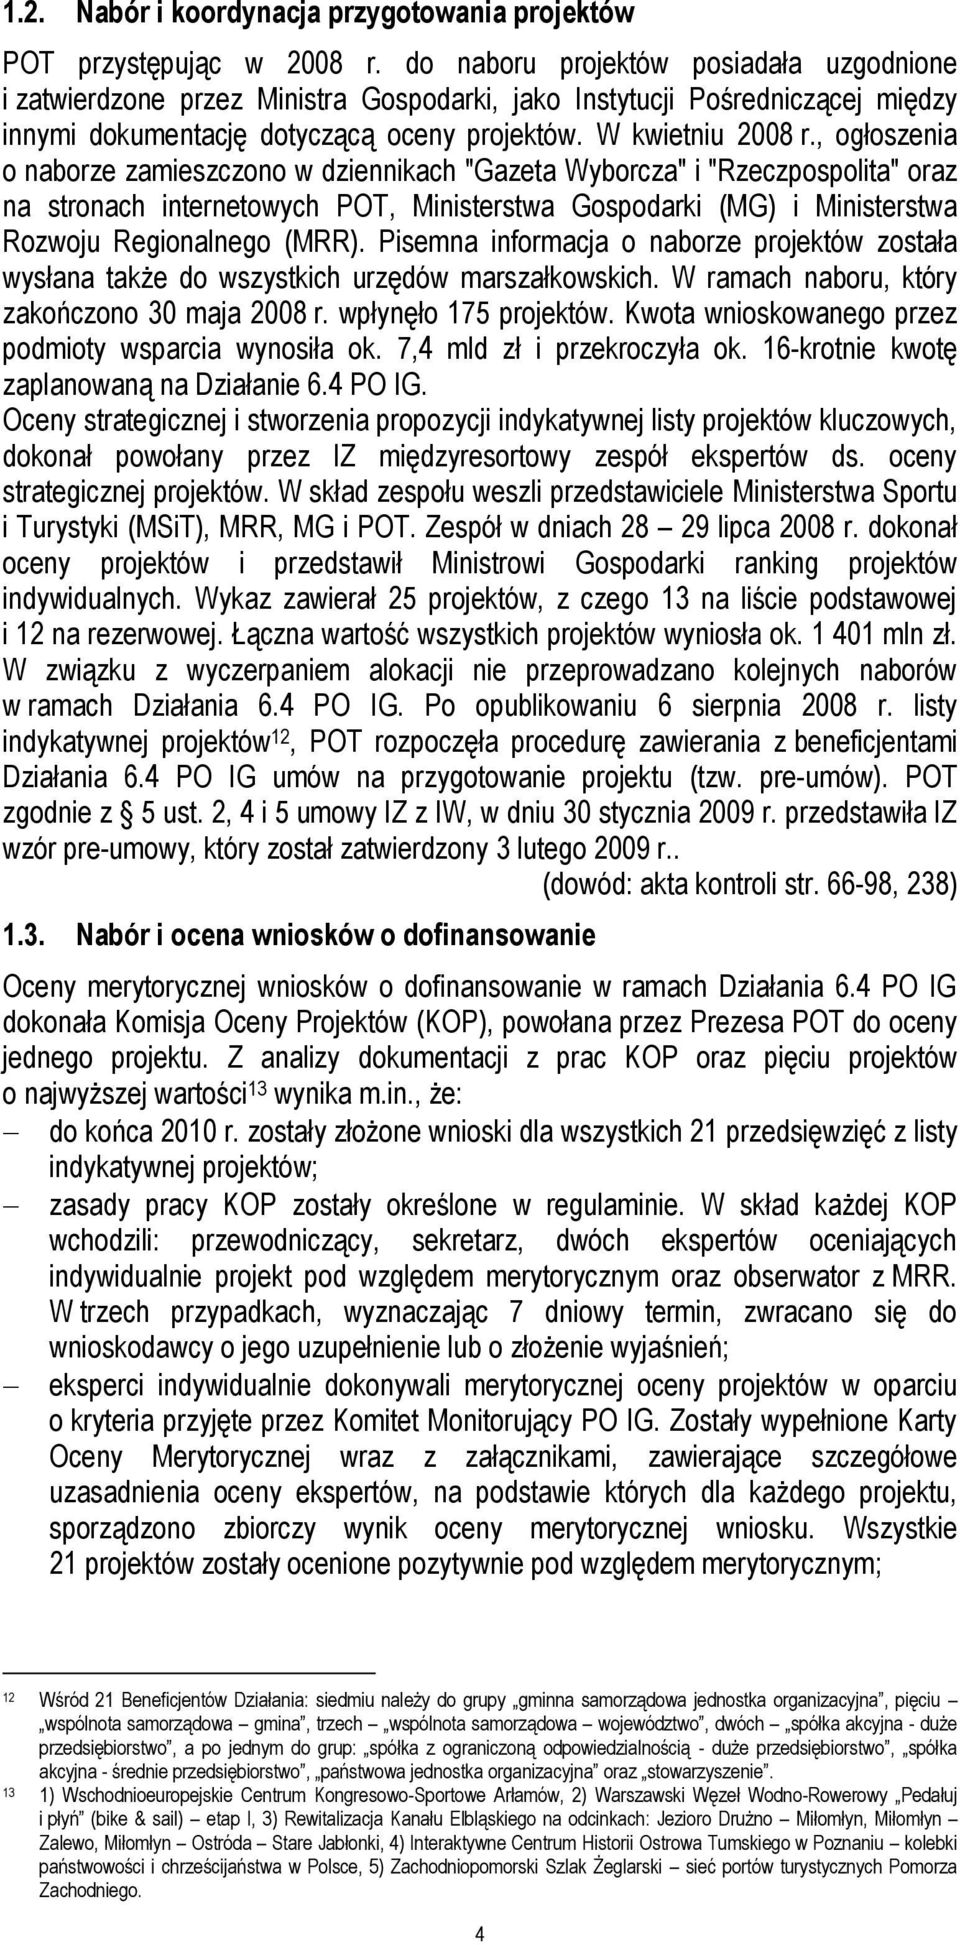 , ogłoszenia o naborze zamieszczono w dziennikach "Gazeta Wyborcza" i "Rzeczpospolita" oraz na stronach internetowych POT, Ministerstwa Gospodarki (MG) i Ministerstwa Rozwoju Regionalnego (MRR).